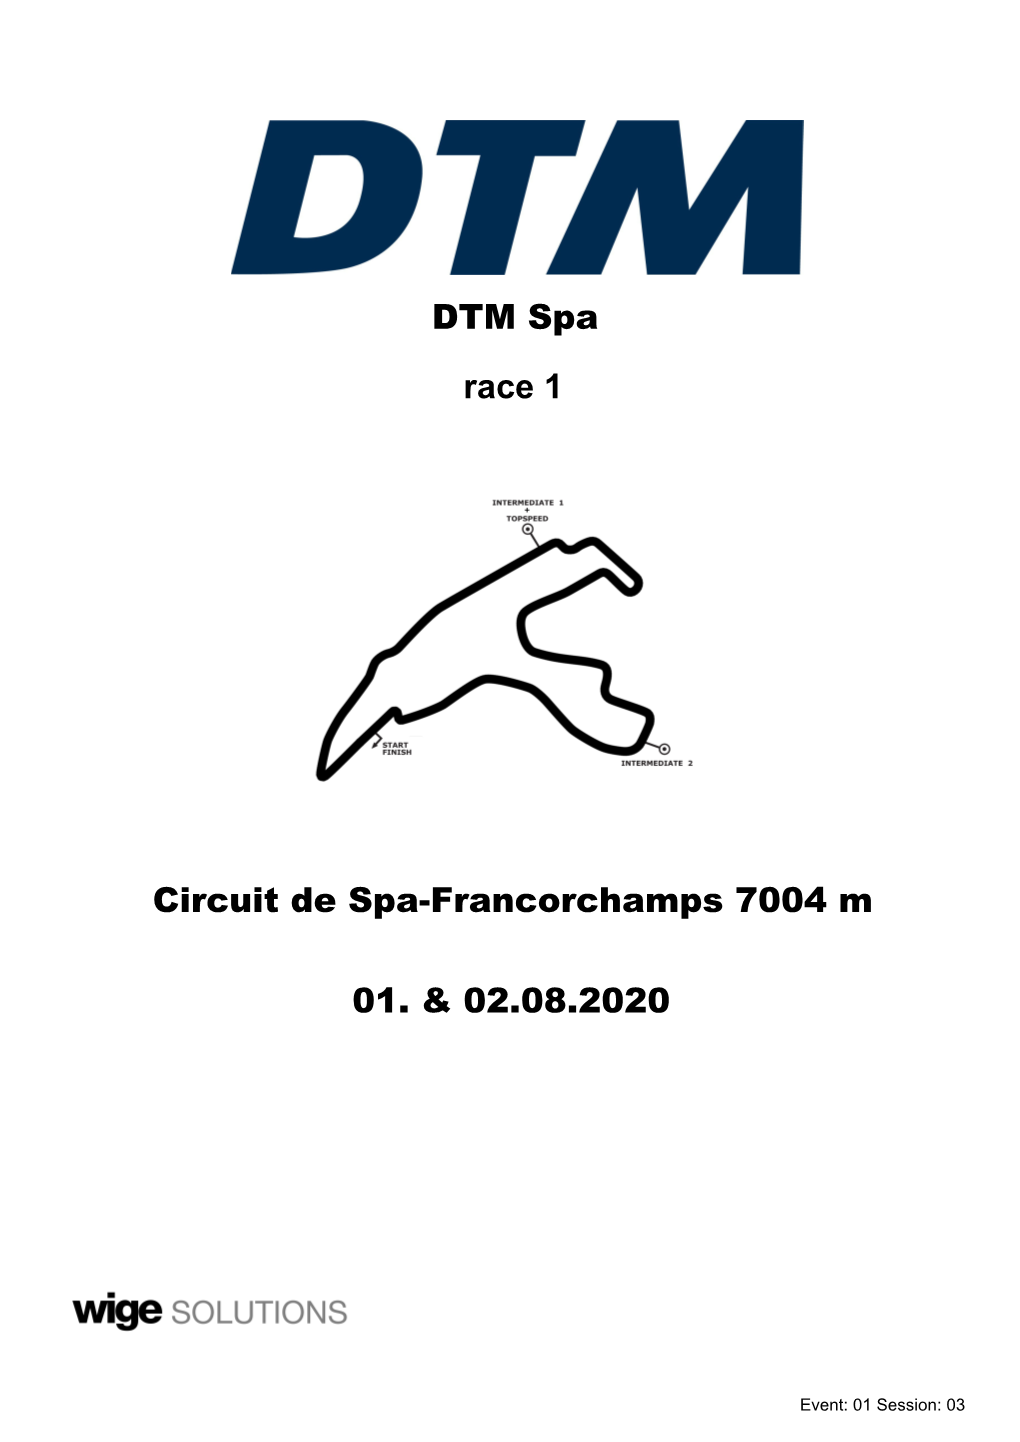 DTM Spa Circuit De Spa-Francorchamps 7004 M 01